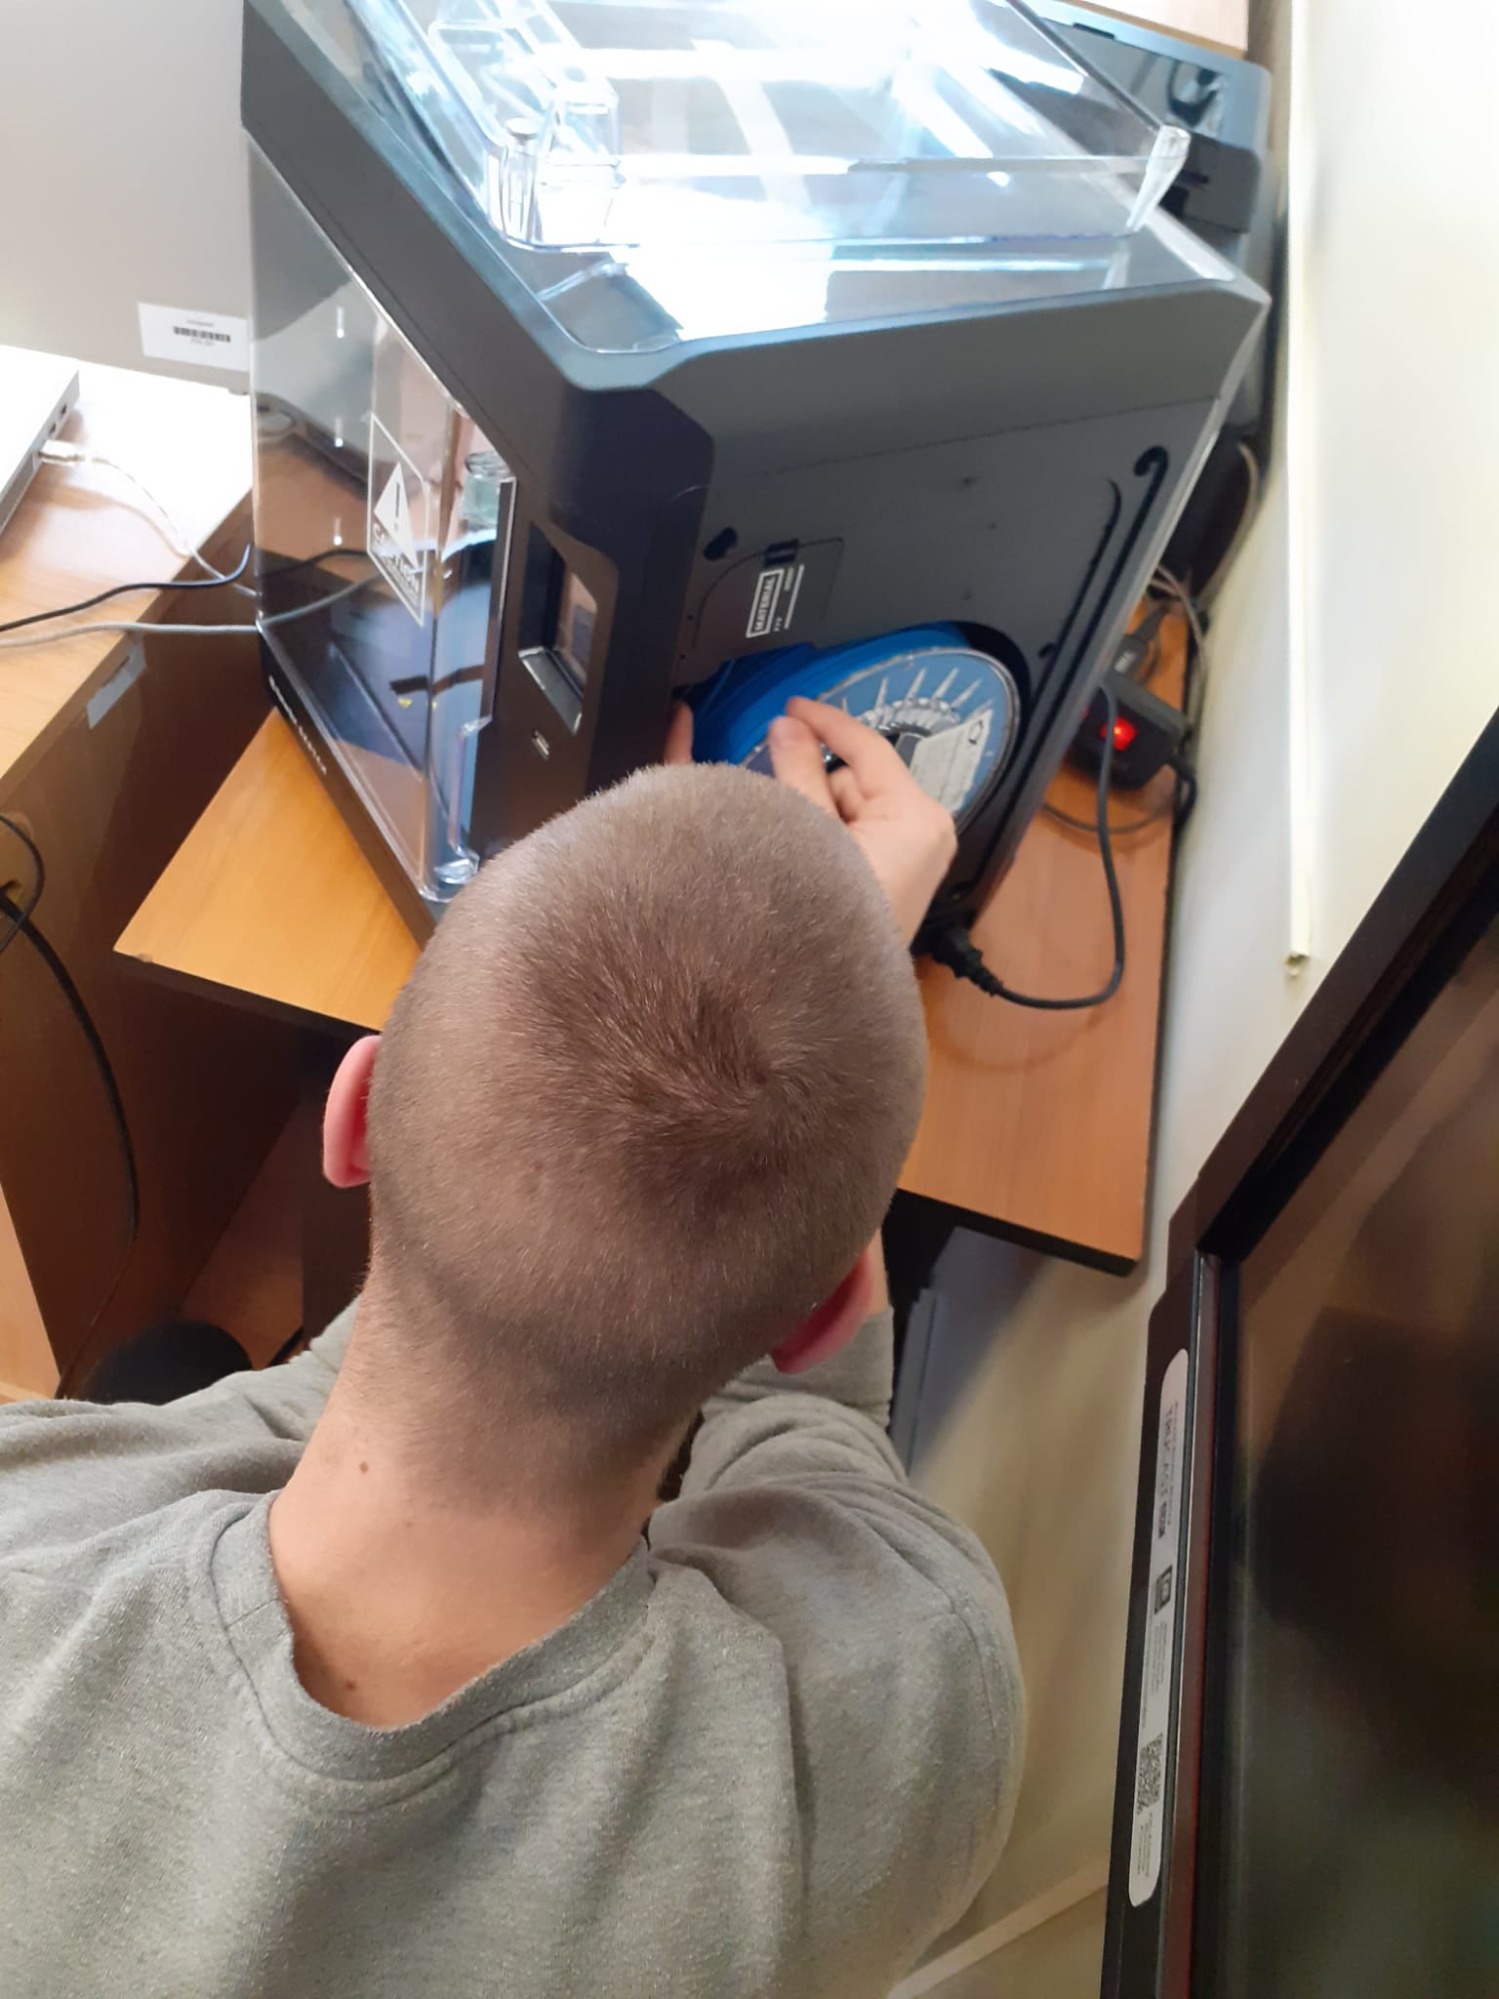 Kilkunastoletni chłopiec odwrócony tyłem  kuca przed drukarką 3D. Zakłada filament.